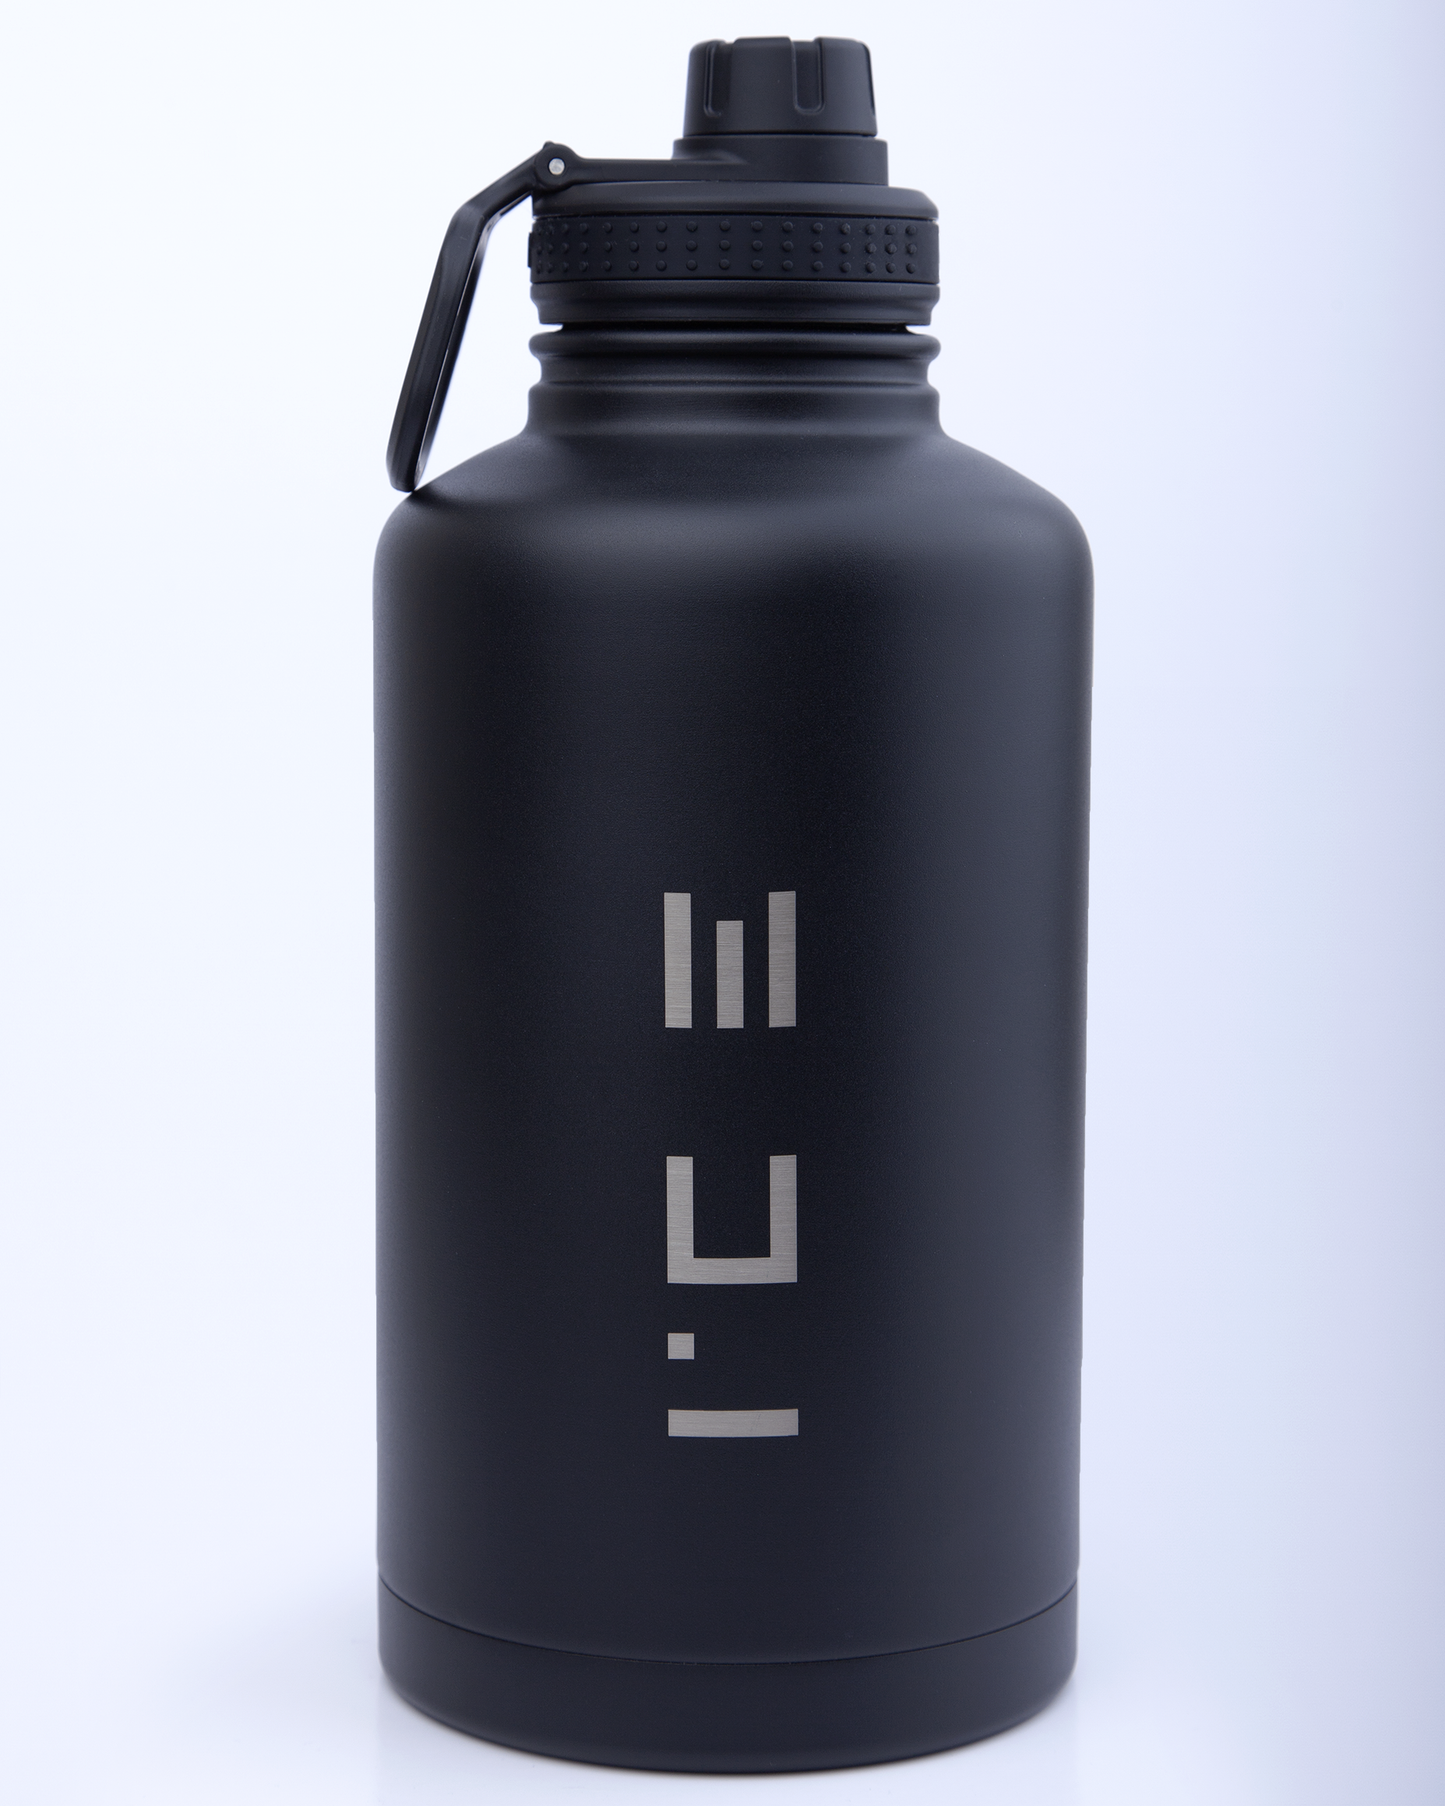 ICE Water Bottle in Black - 22 oz